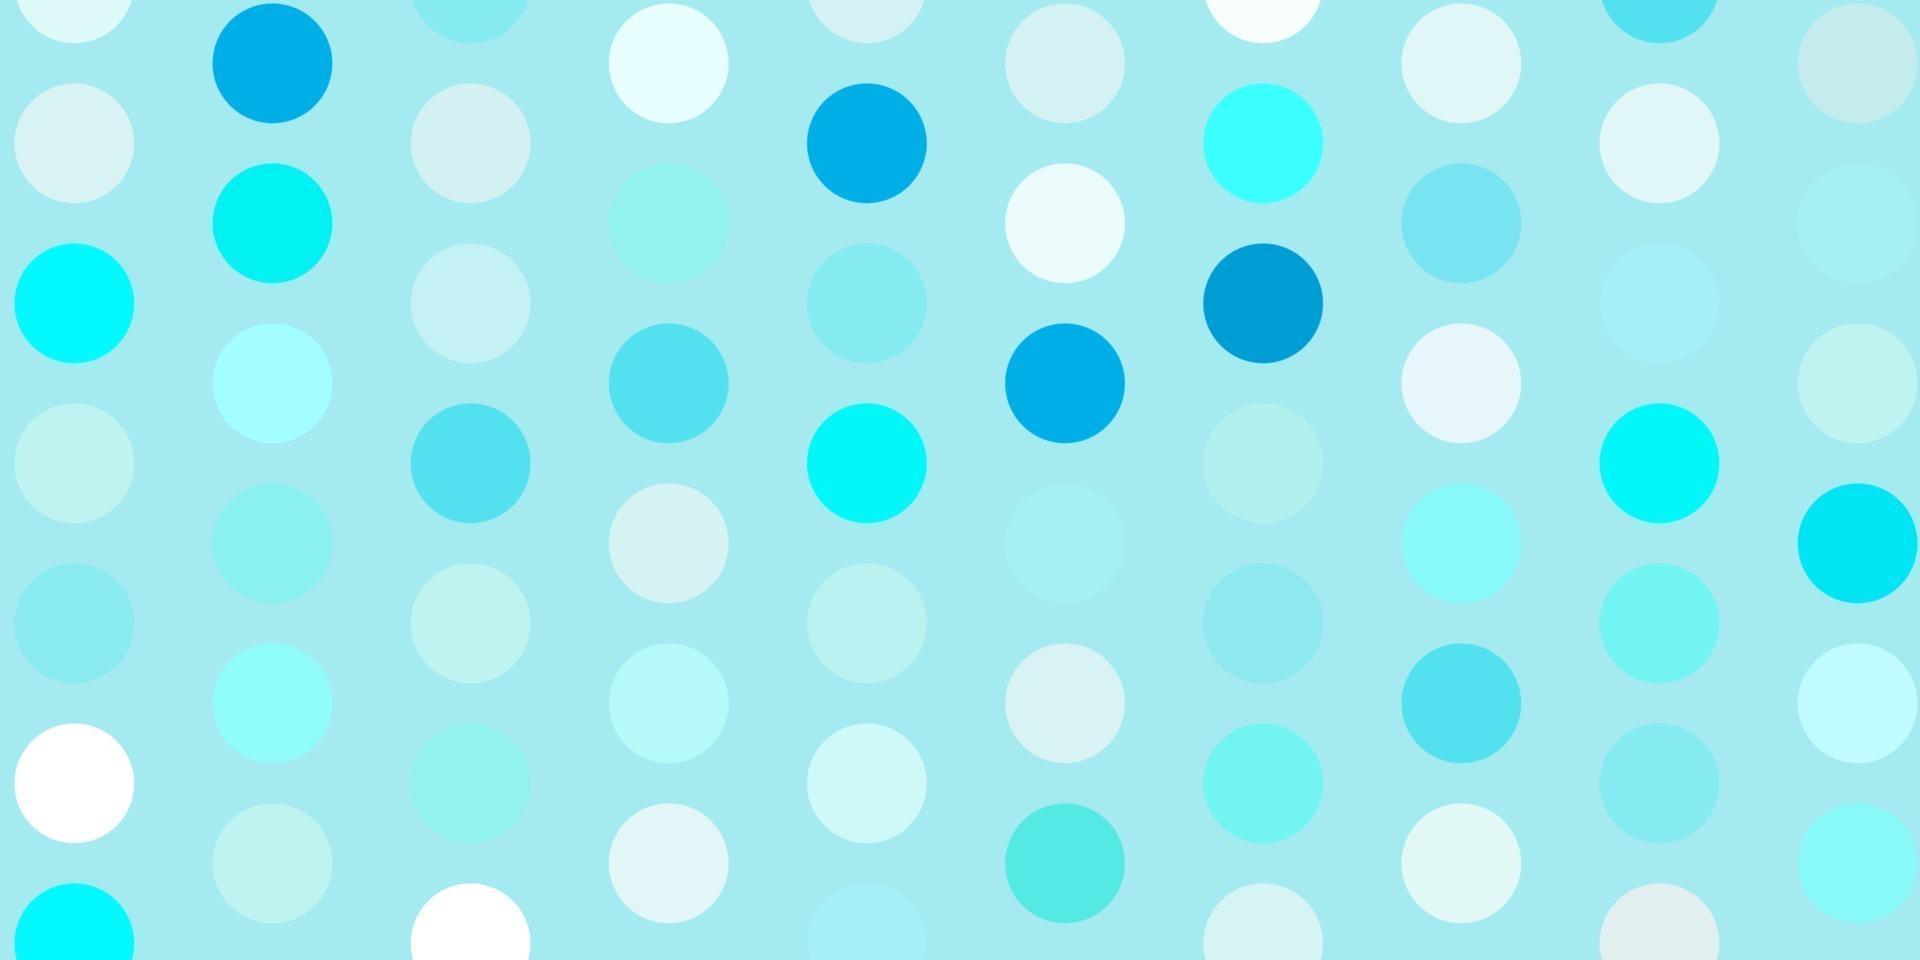 padrão de vetor azul claro com esferas.